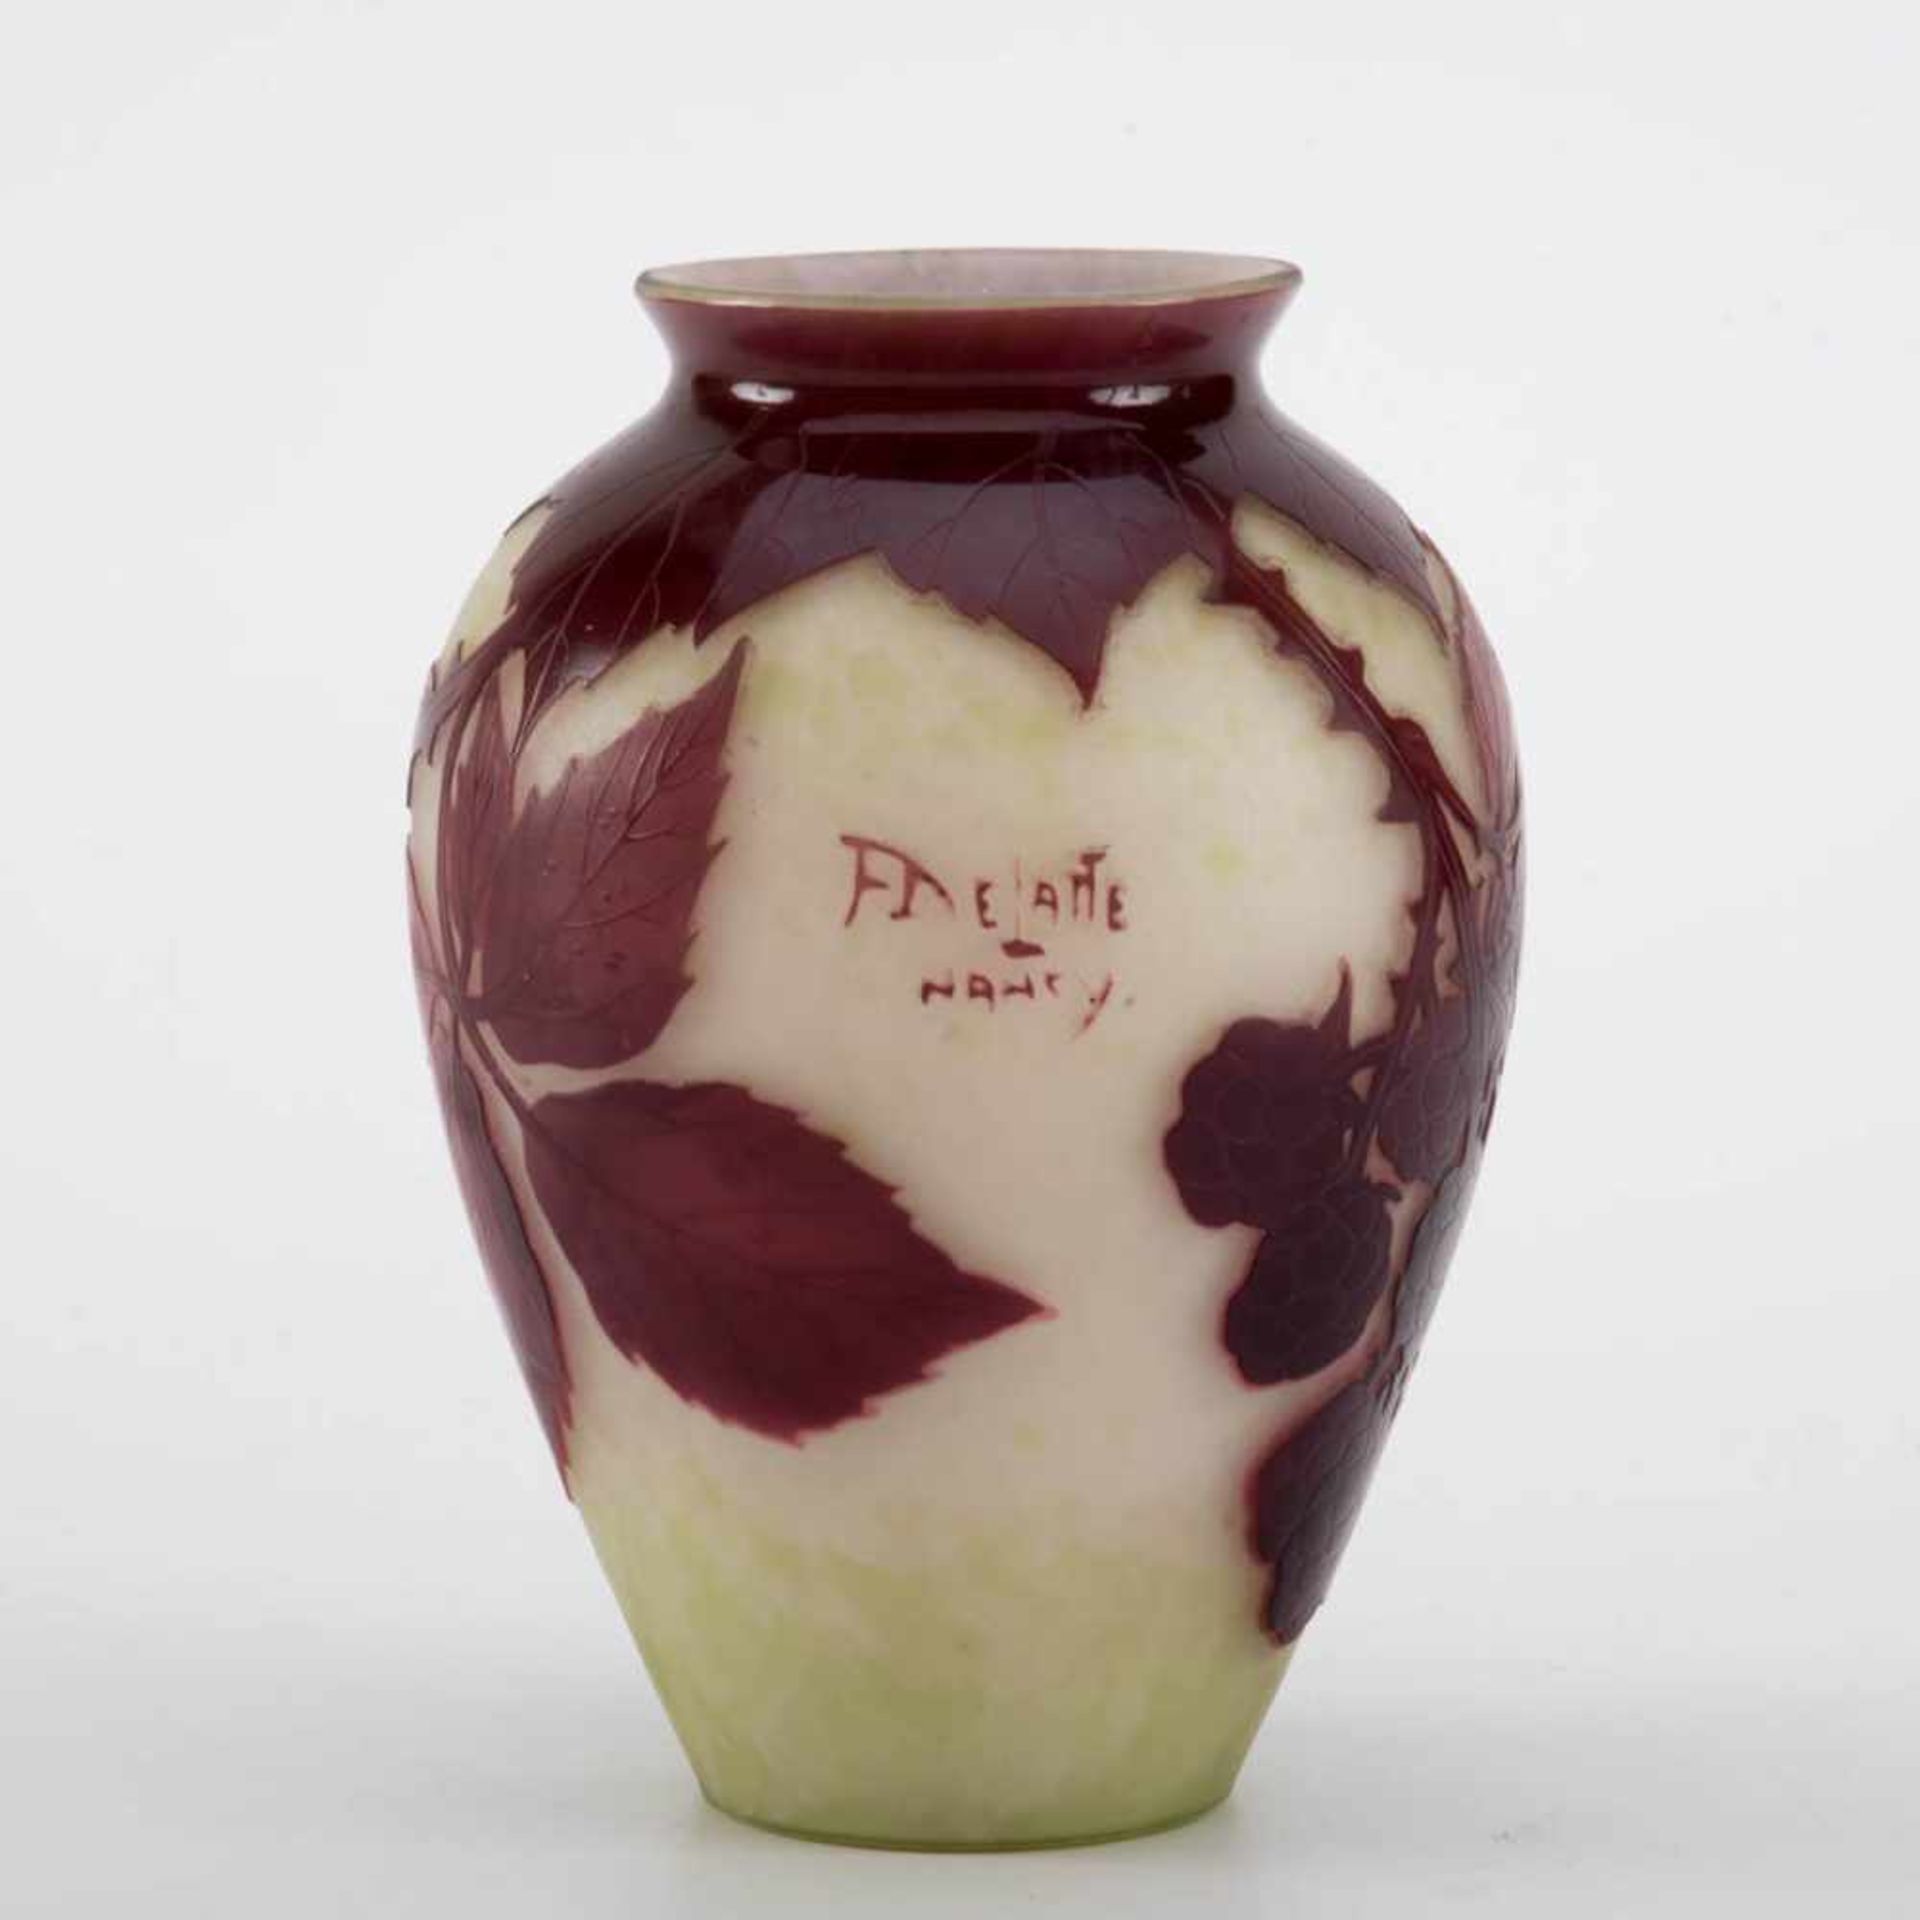 Delatte, Nancy, Vase um 1920 Ovoider Korpus. Farbloses Glas mit hellgrün bis weißlich verlaufender - Image 2 of 2